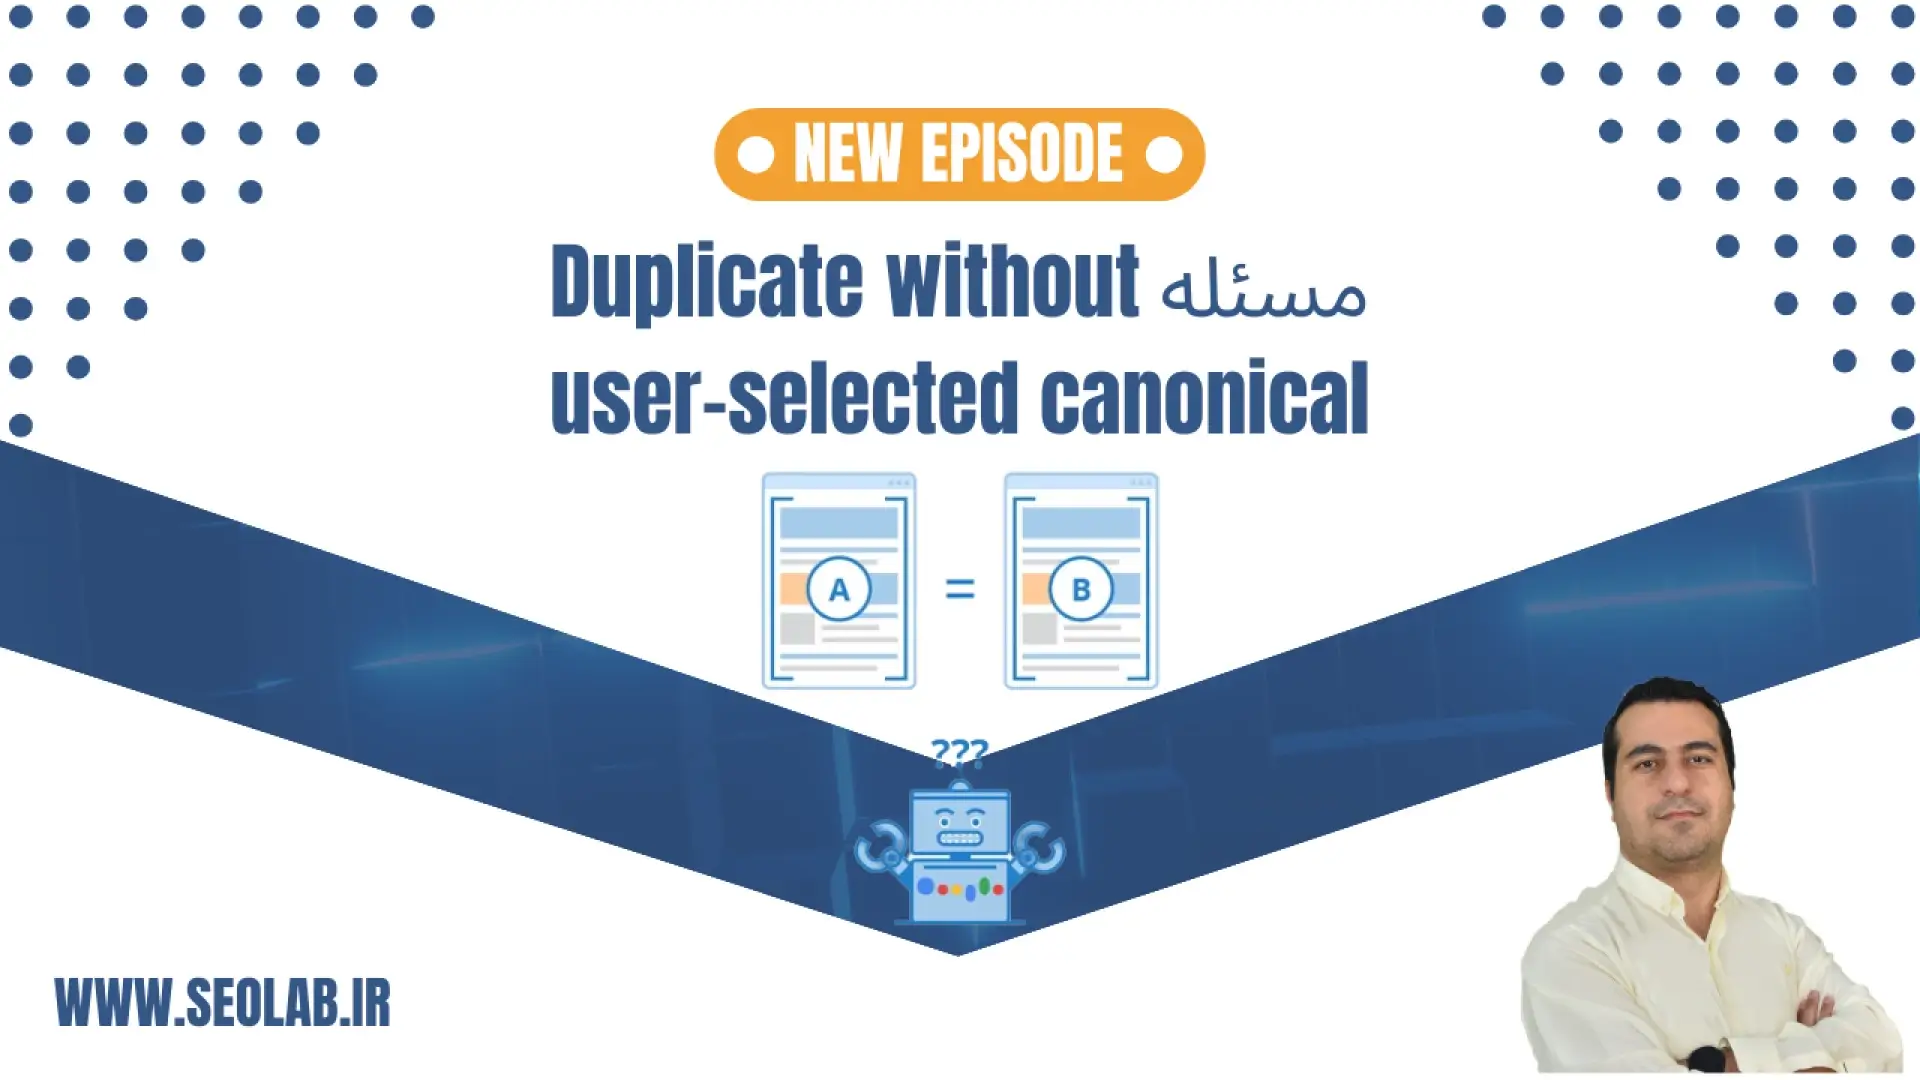 مسئله Duplicate without user-selected canonical